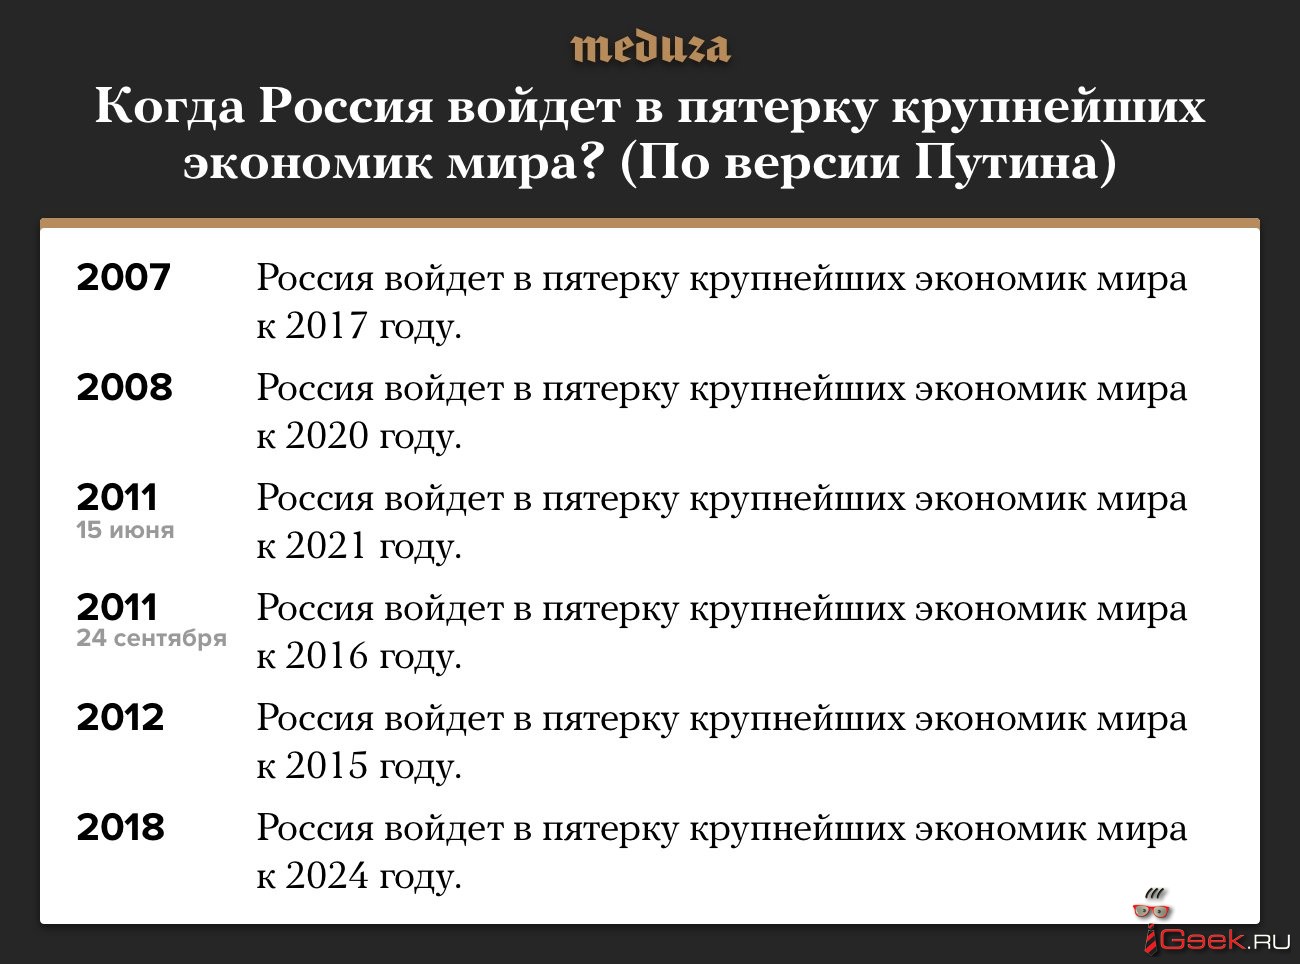 Внезапно: Медведев вновь возглавил правительство. А Путин вновь обещает, что Россия станет пятой экономикой мира